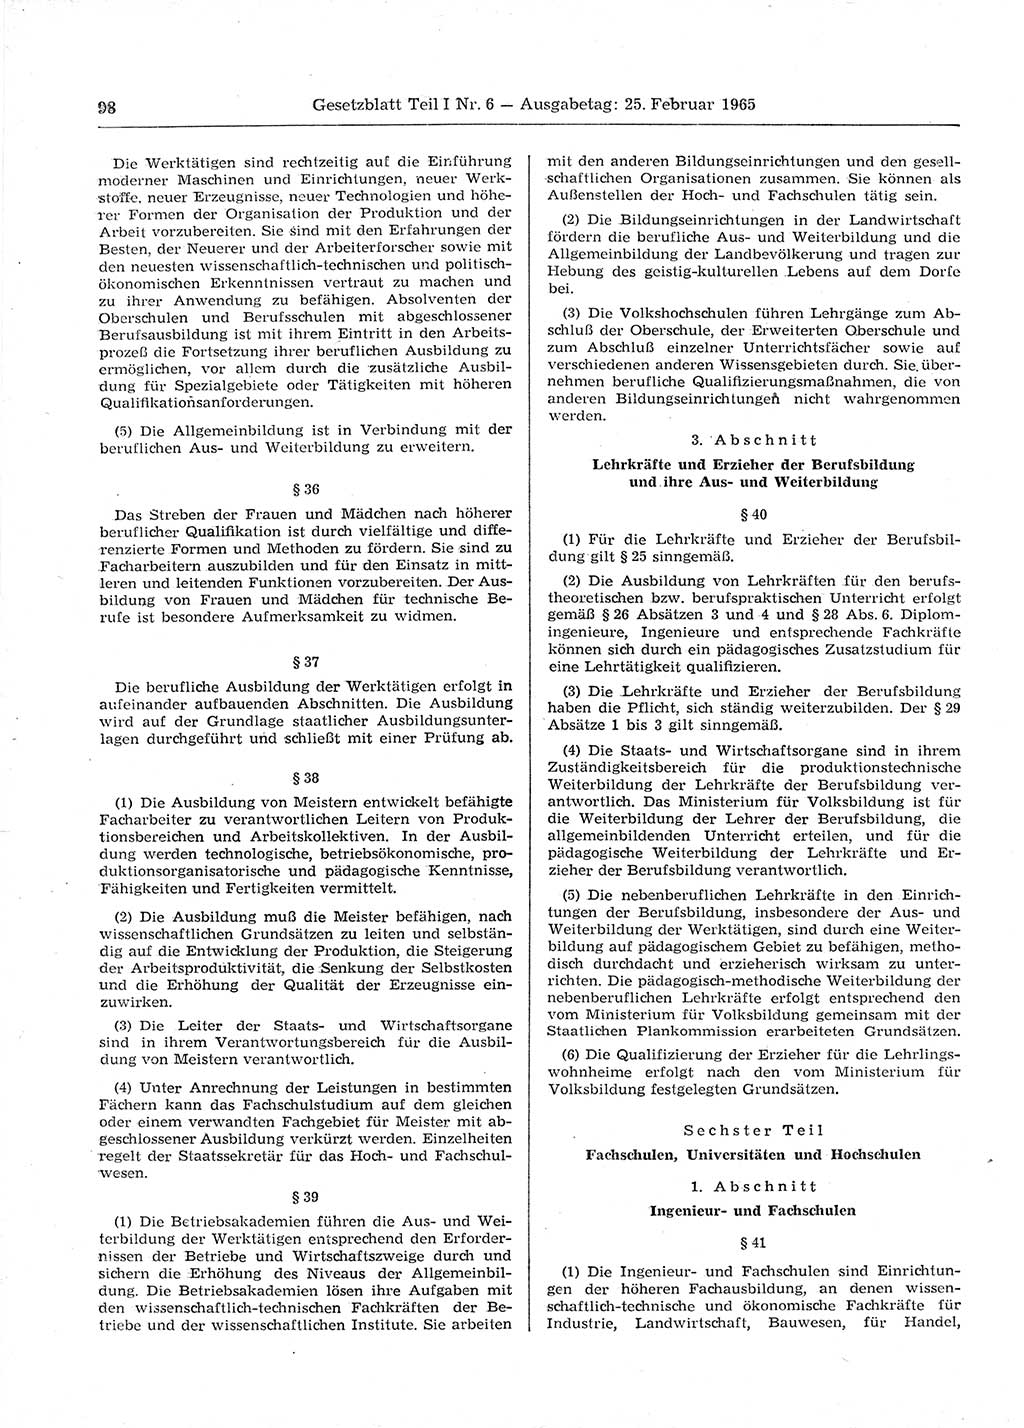 Gesetzblatt (GBl.) der Deutschen Demokratischen Republik (DDR) Teil Ⅰ 1965, Seite 98 (GBl. DDR Ⅰ 1965, S. 98)